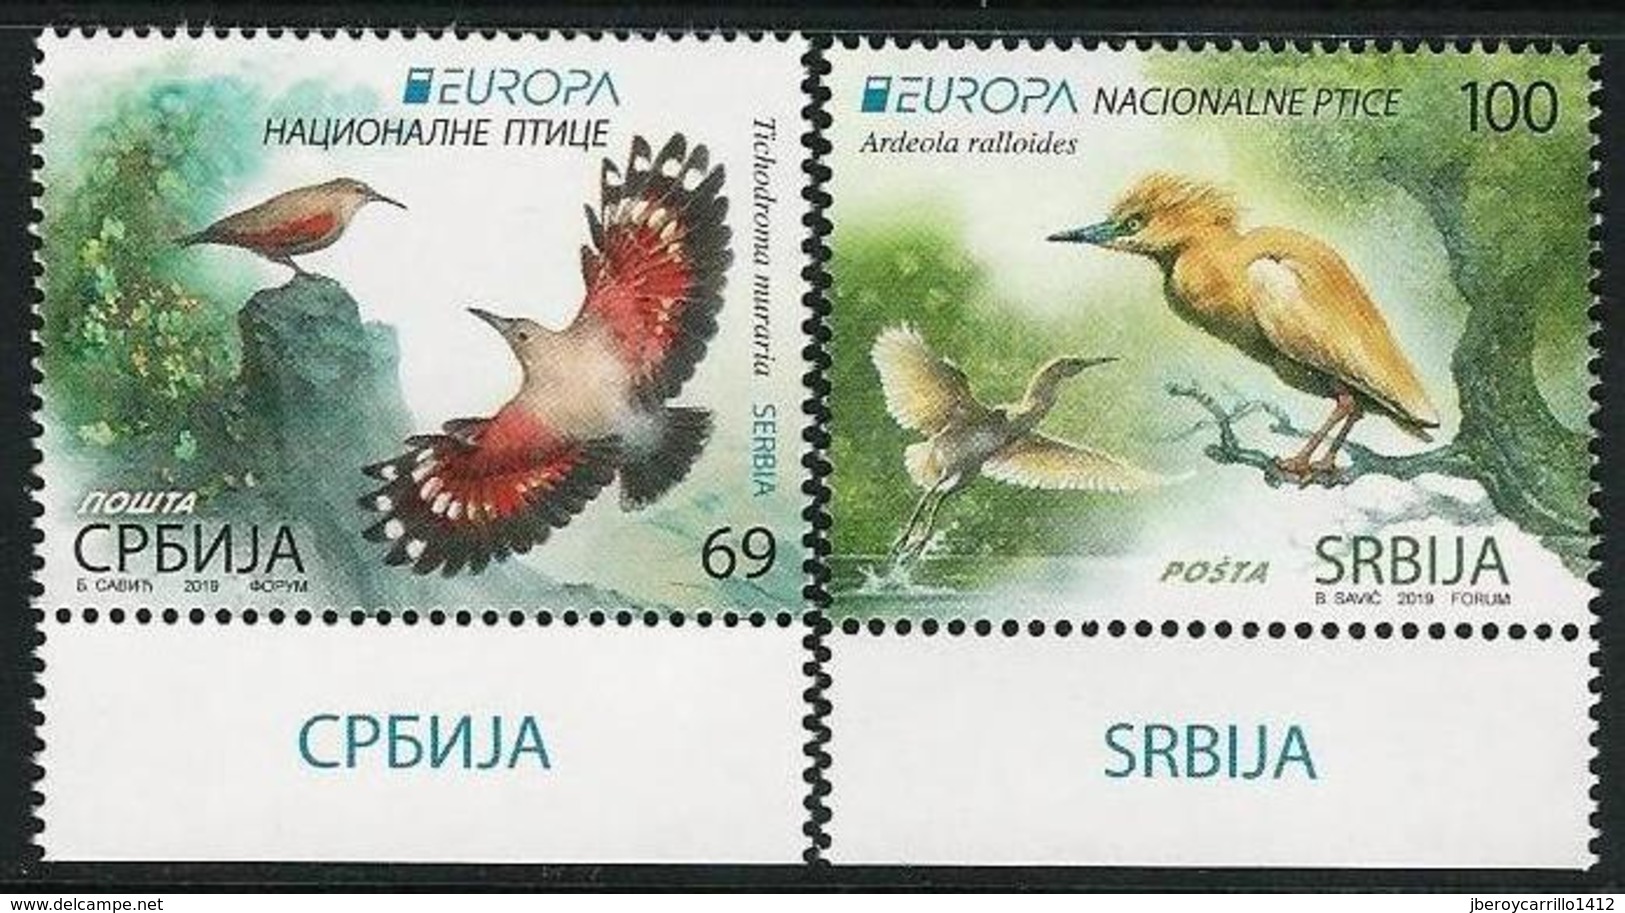 SERBIA /SERBIEN / SRBIJA  -EUROPA 2019 -NATIONAL BIRDS.-"AVES -BIRDS -VÖGEL-OISEAUX"- SERIE N - 2019